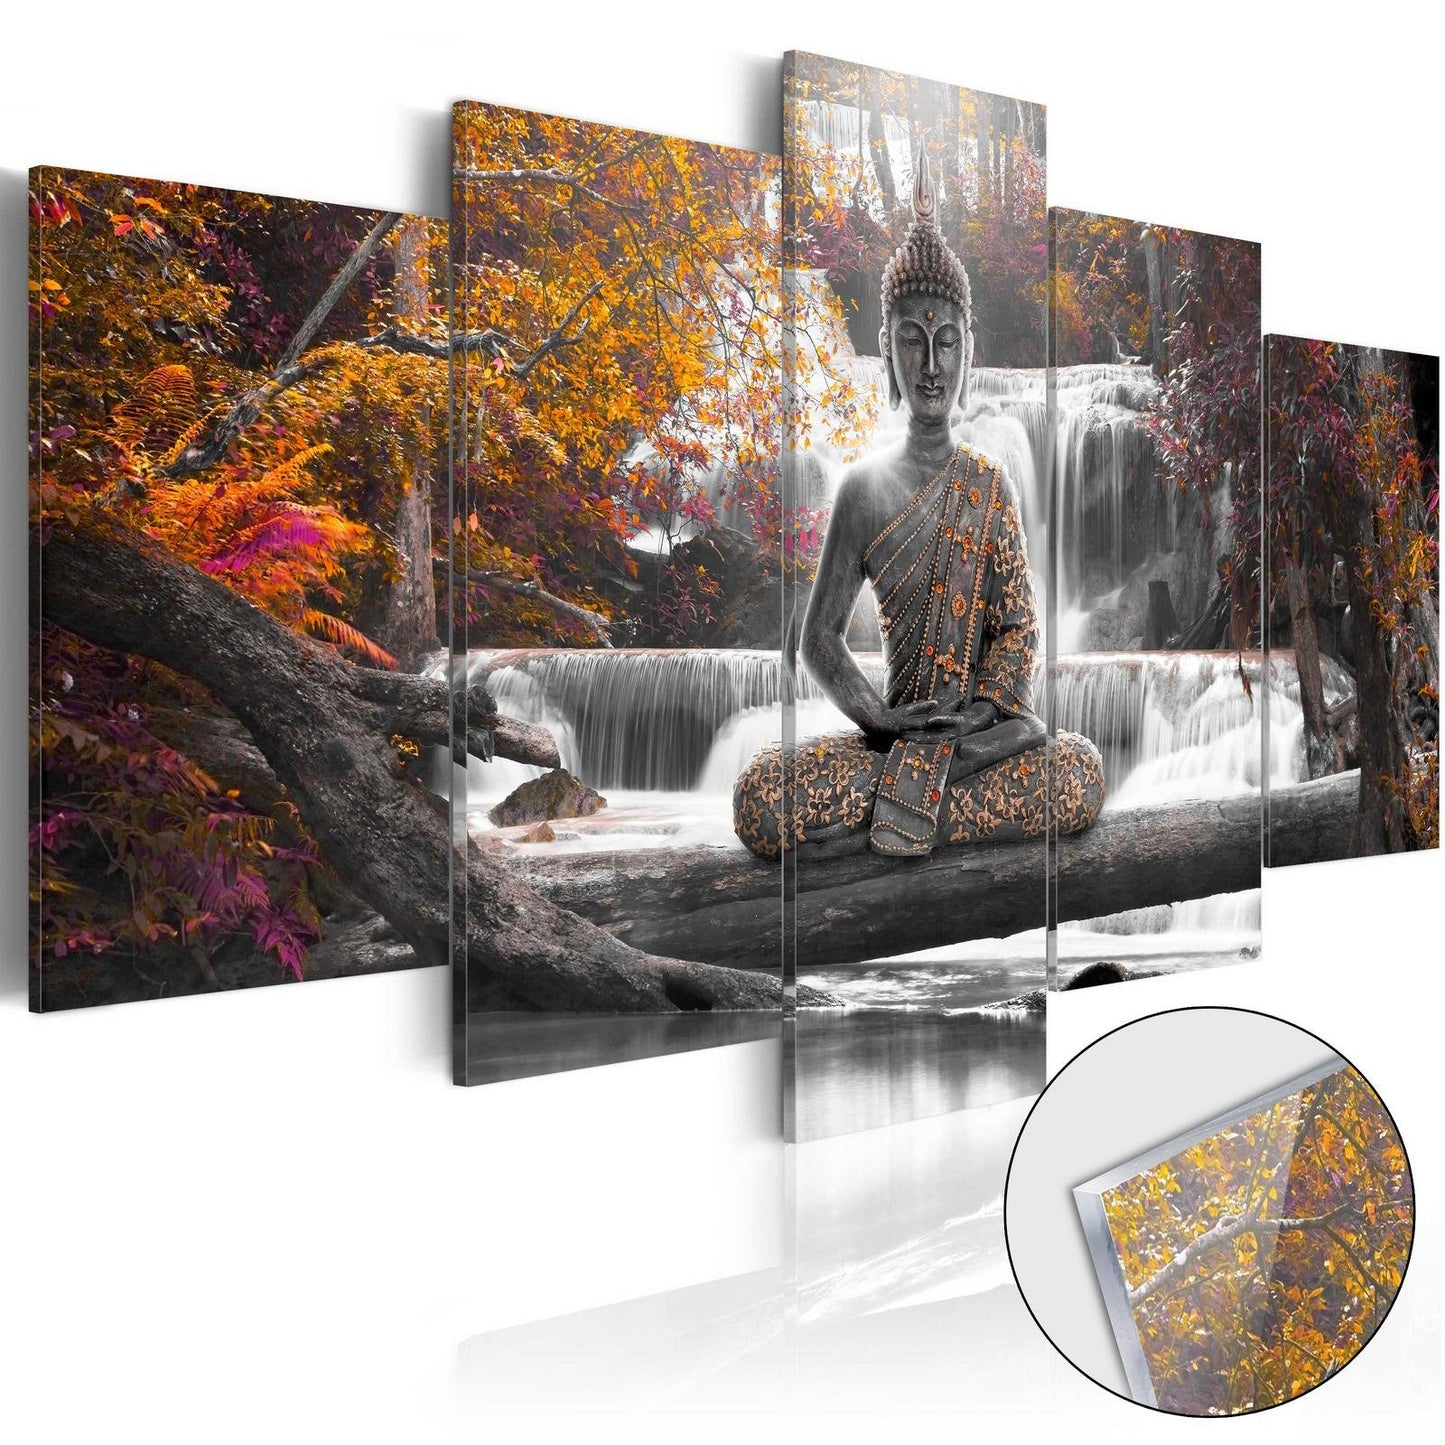 Afbeelding op acrylglas - Autumnal Buddha [Glass]